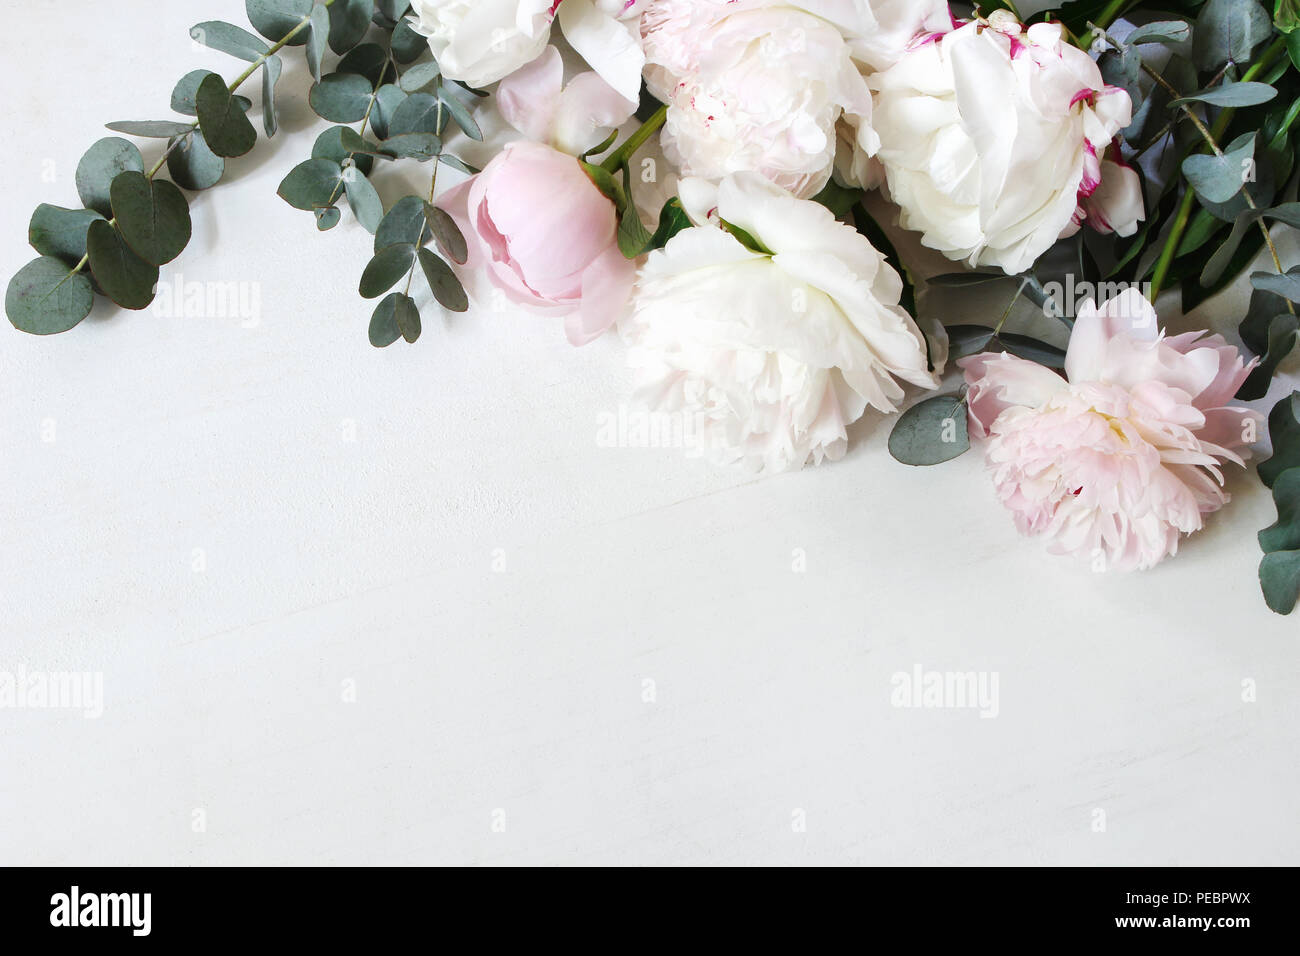 Blush ivoire et Champagne Mariage Table arrangement de fleurs Roses pivoines 